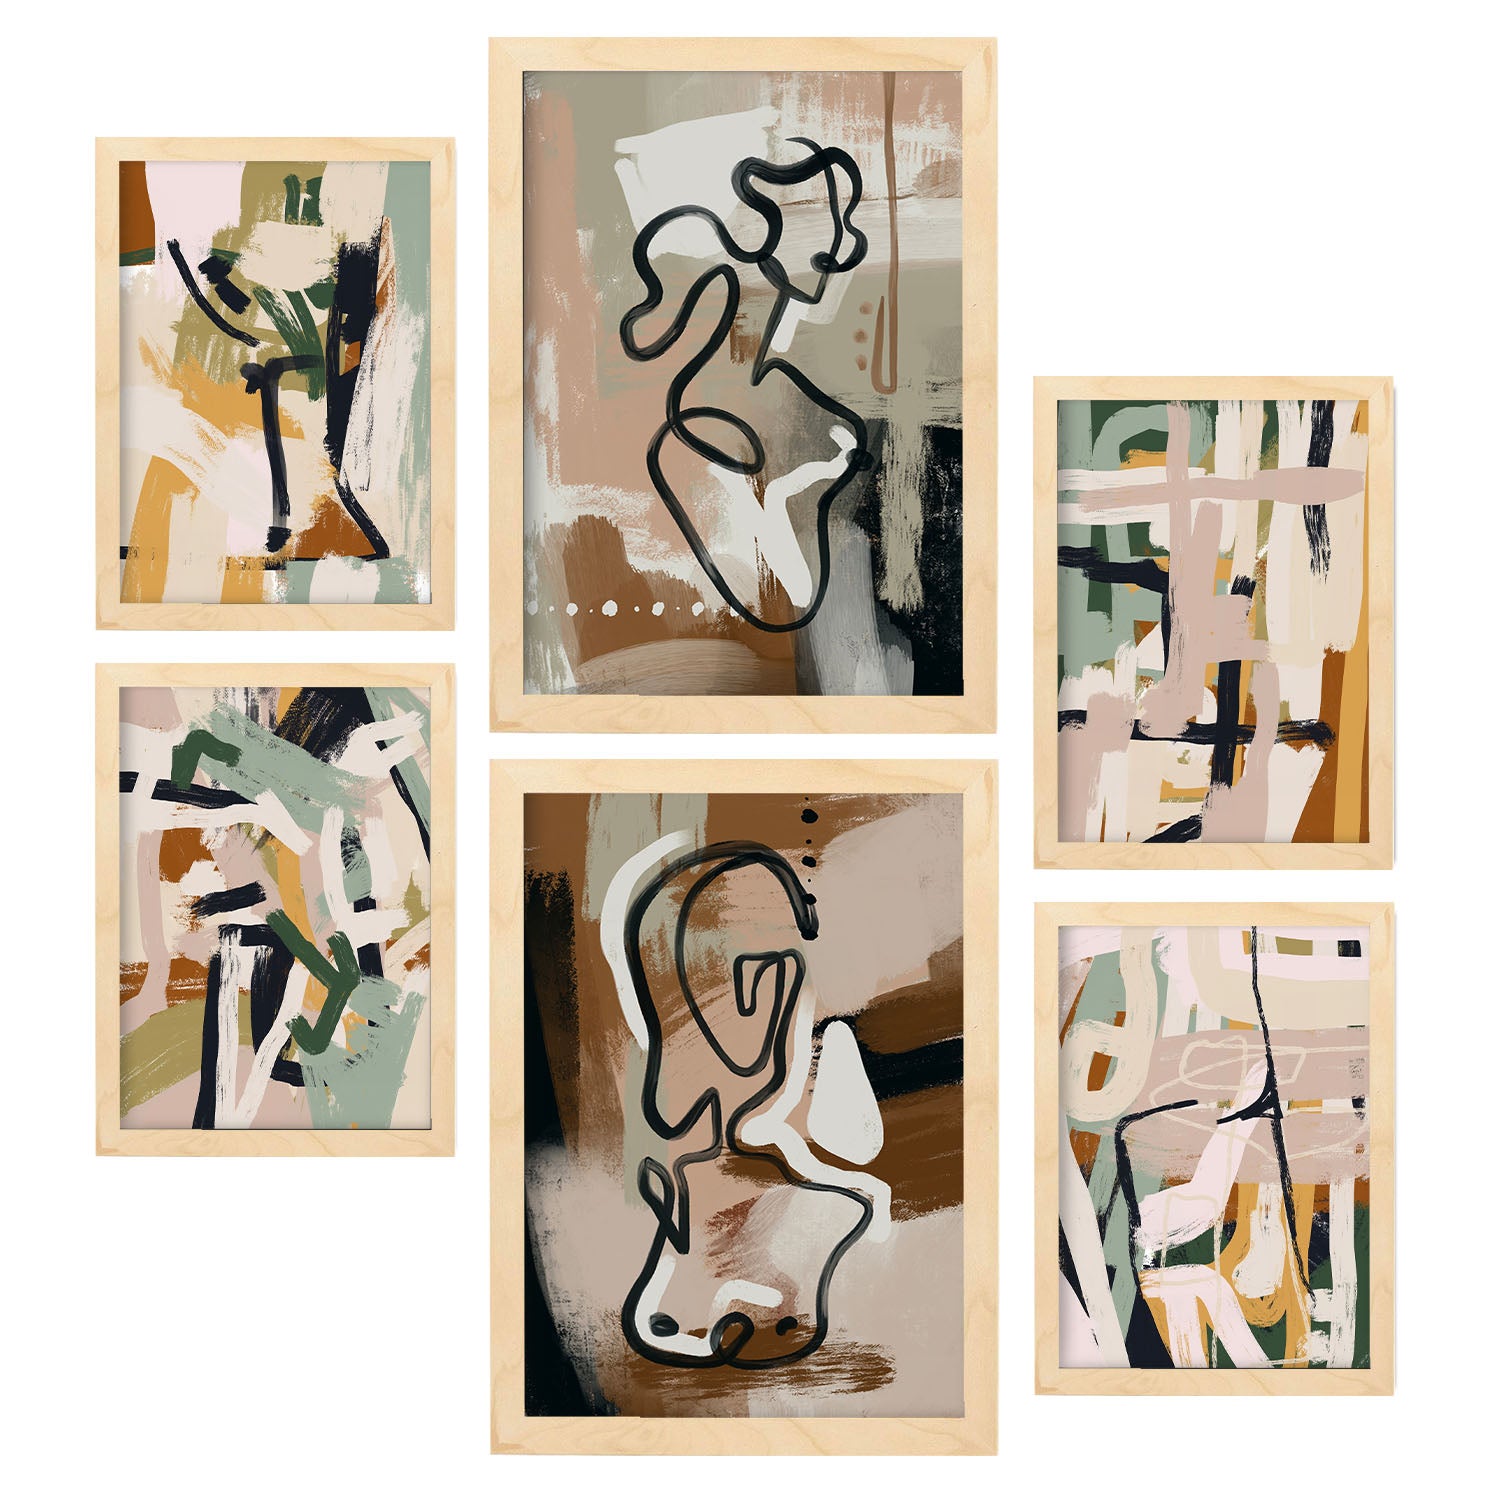 6 Láminas Fotografía Dibujo Matisse - Cuadros Decorativos Ilustració –  Nacnic Estudio SL